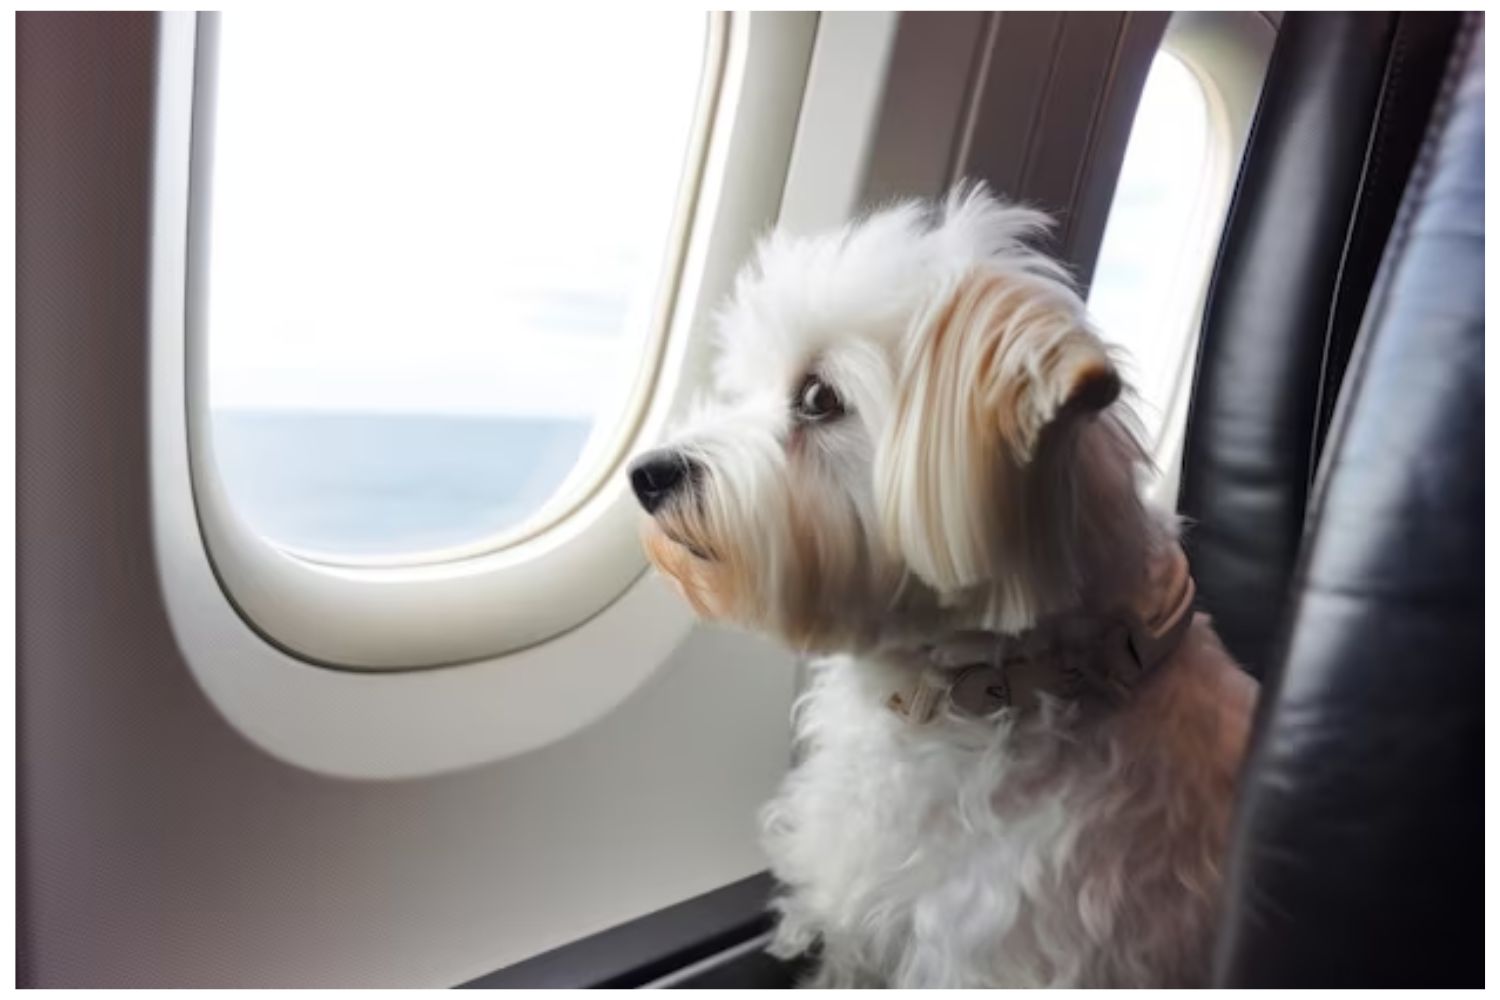 Mag jouw hond ook mee op vliegvakantie? Leuk! Maar weet je al waar je rekening mee moet houden? En weet je al hoe je hem gaat vervoeren? Wij denken hierbij graag met je mee. Om je hond mee in het vliegtuig te nemen moet je namelijk aan een aantal eisen voldoen. Hierbij wordt gedacht aan de gezondheid van jouw hond en de veiligheid van het vliegtuig. Naast de mogelijke vaccinaties is het voornaamste aspect voor een reis het aanschaffen van een goede reisbench die voldoet aan de eisen van de IATA. Hier wijden we dan ook graag wat meer tijd en tekst aan.